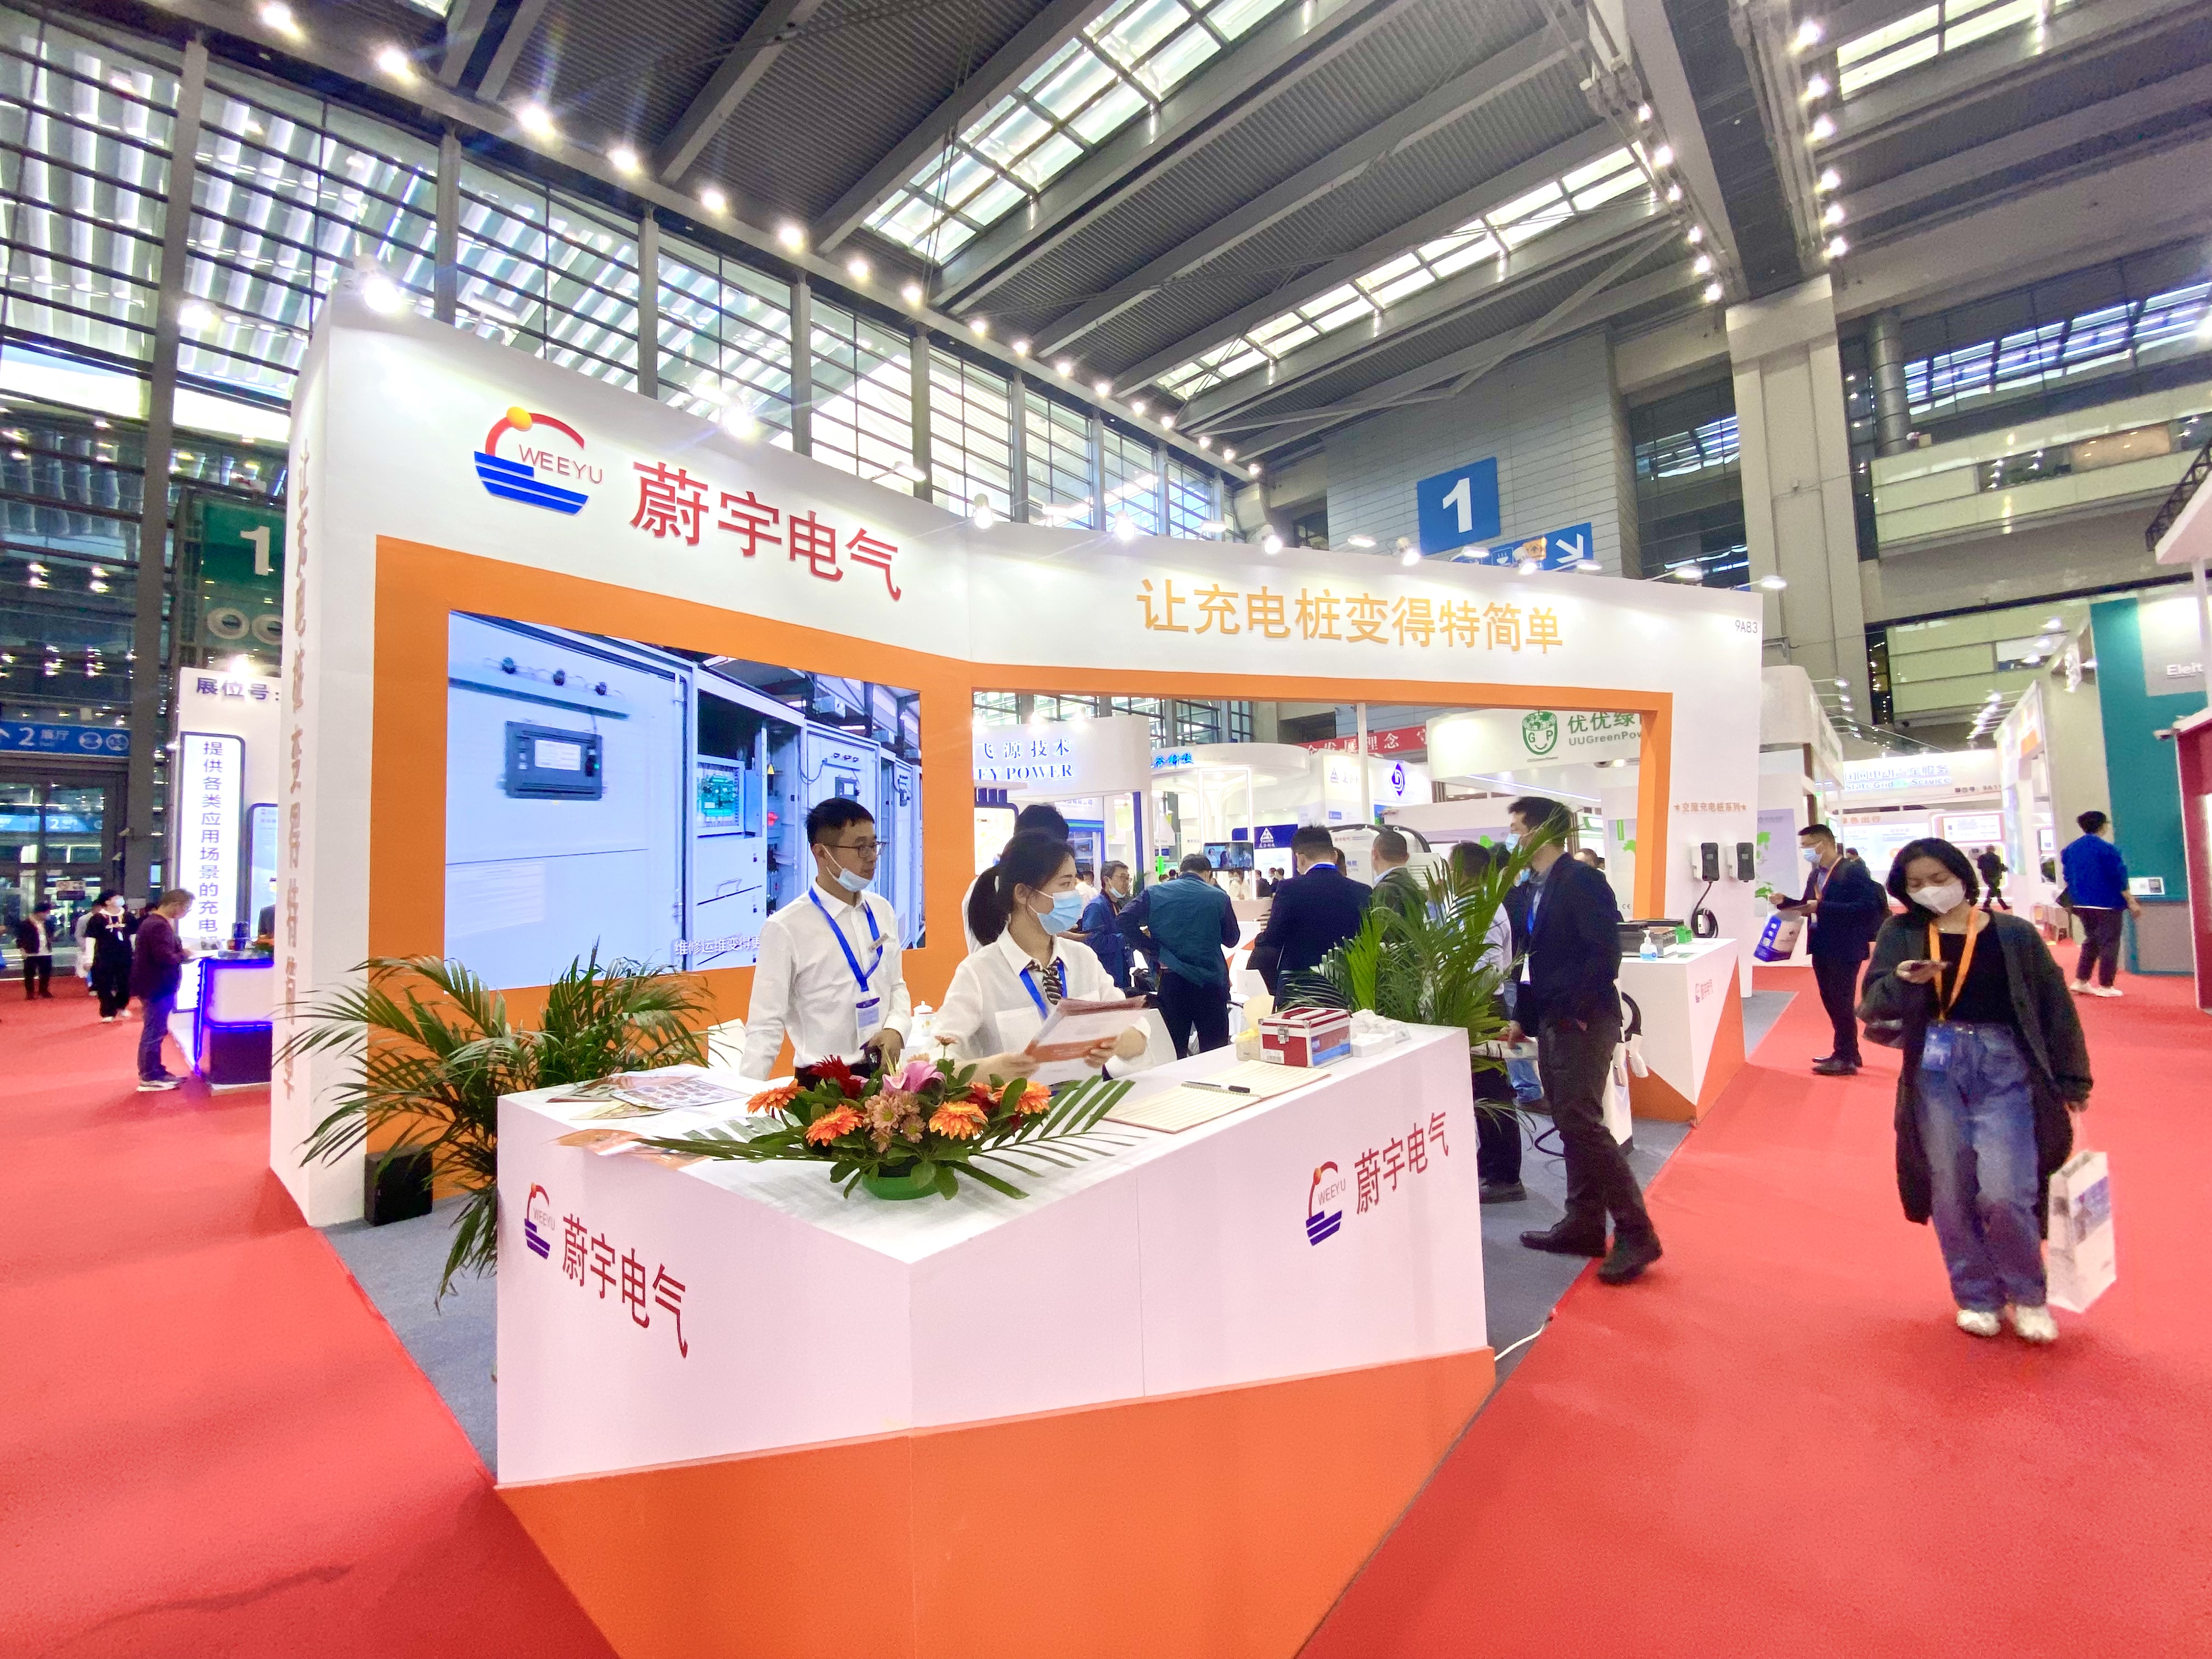 Weeyu Electric strălucește la Expoziția Internațională de Echipamente Tehnologice pentru Stația Internațională de Încărcare din Shenzhen